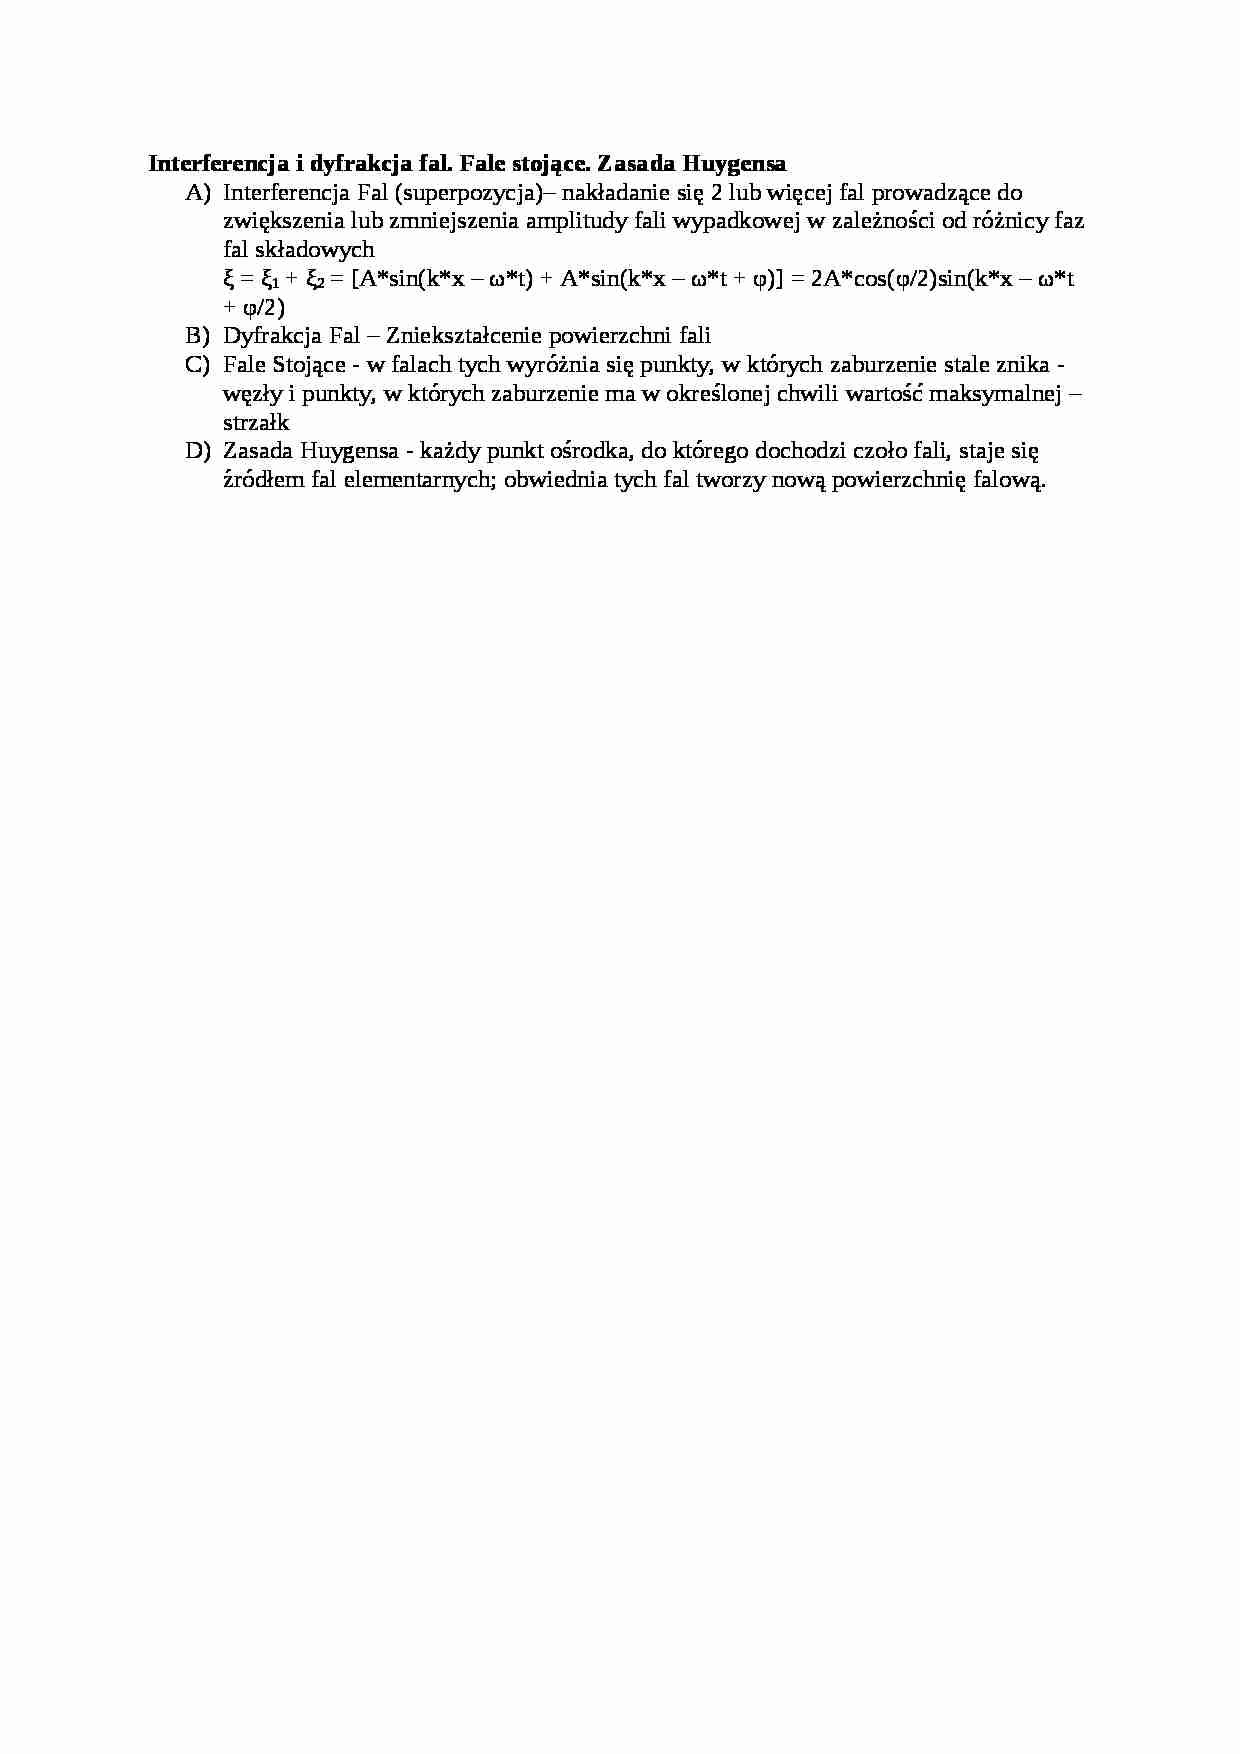 Interferencja i dyfrakcja fal - opracowanie - strona 1